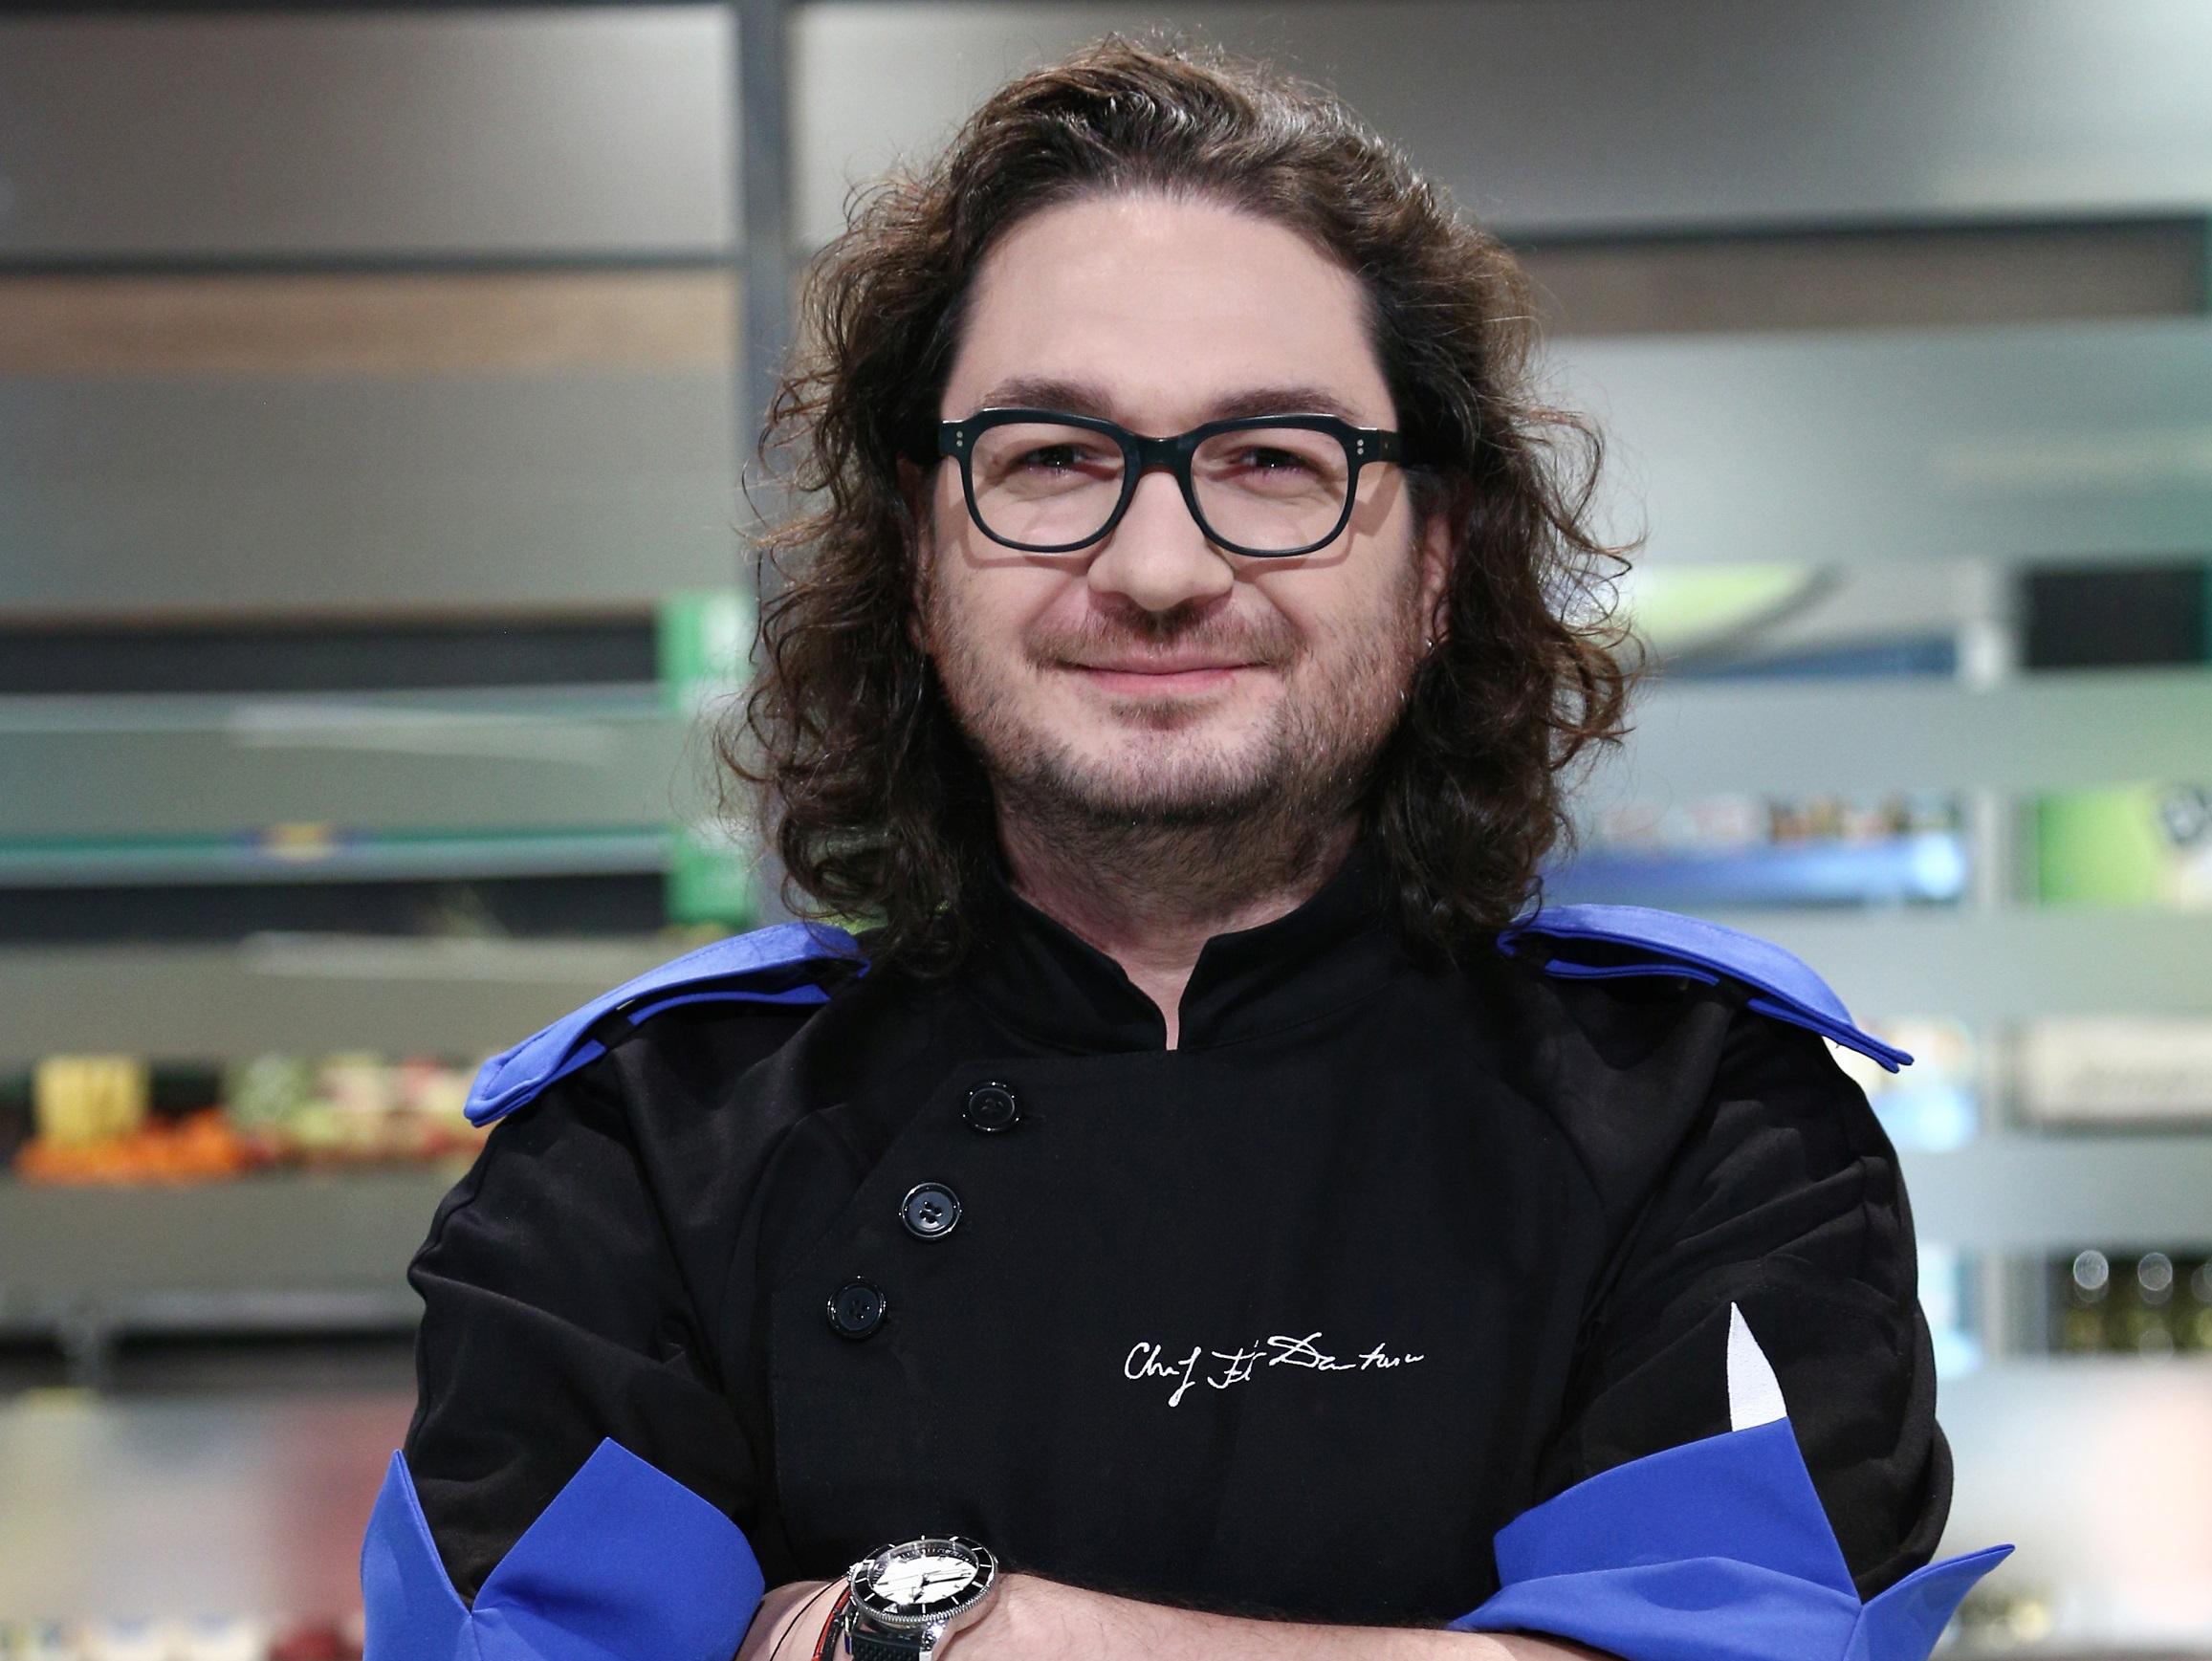 Chefi la cuțite 2021. Cine sunt concurenții din echipa lui Chef Florin Dumitrescu în sezonul 9